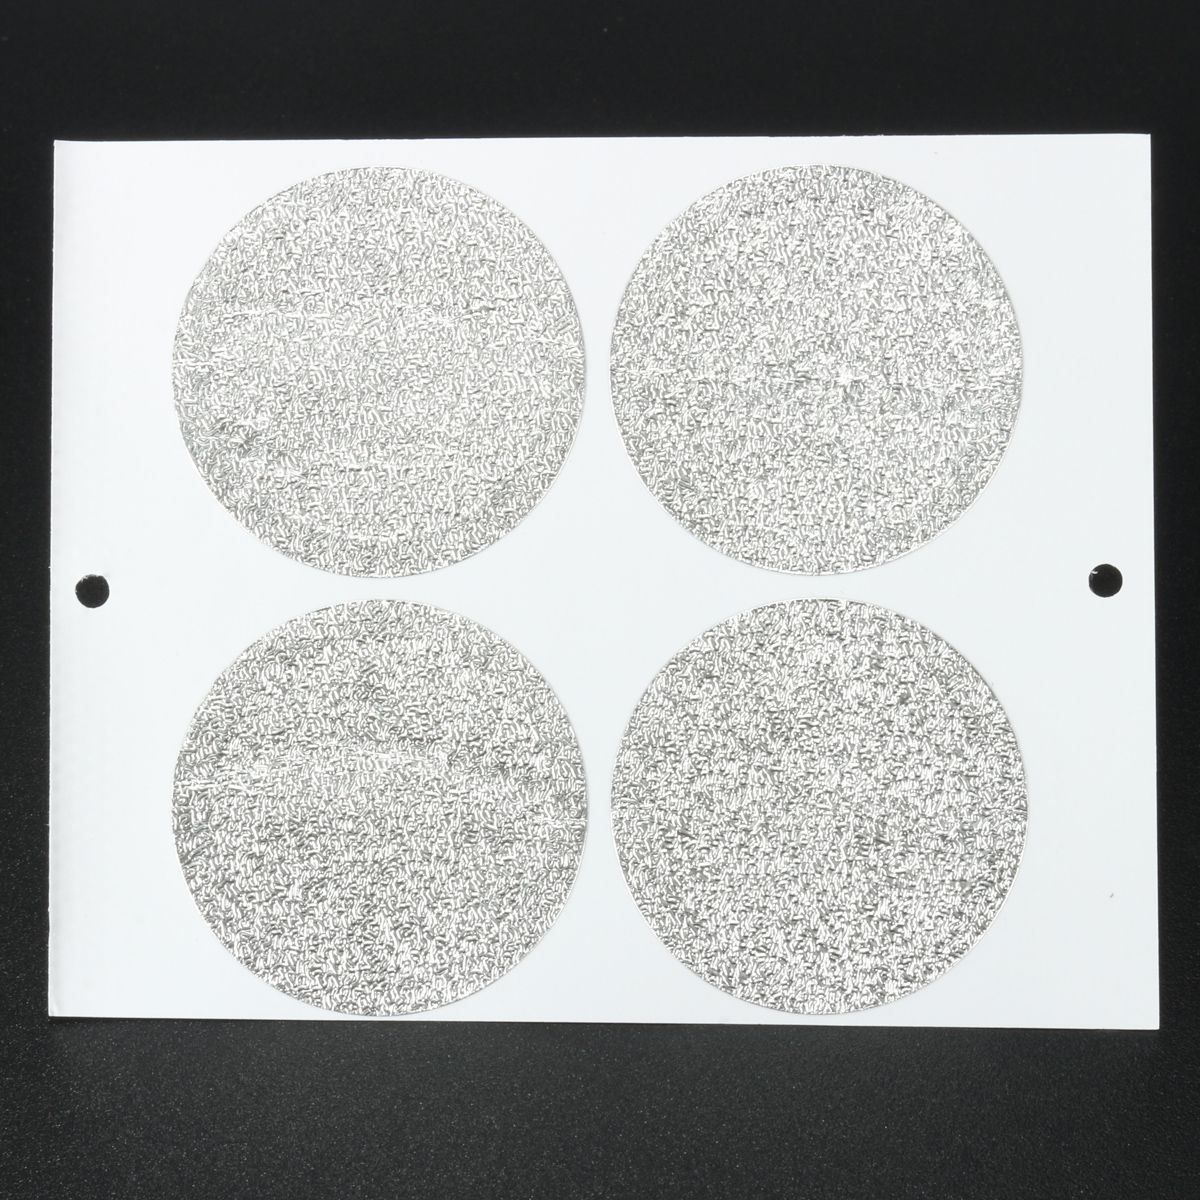 100Pcs-37mm-Aluminum-Foils-Lids-Sticker-For-Refilling-Coffee-Capsule-1268144